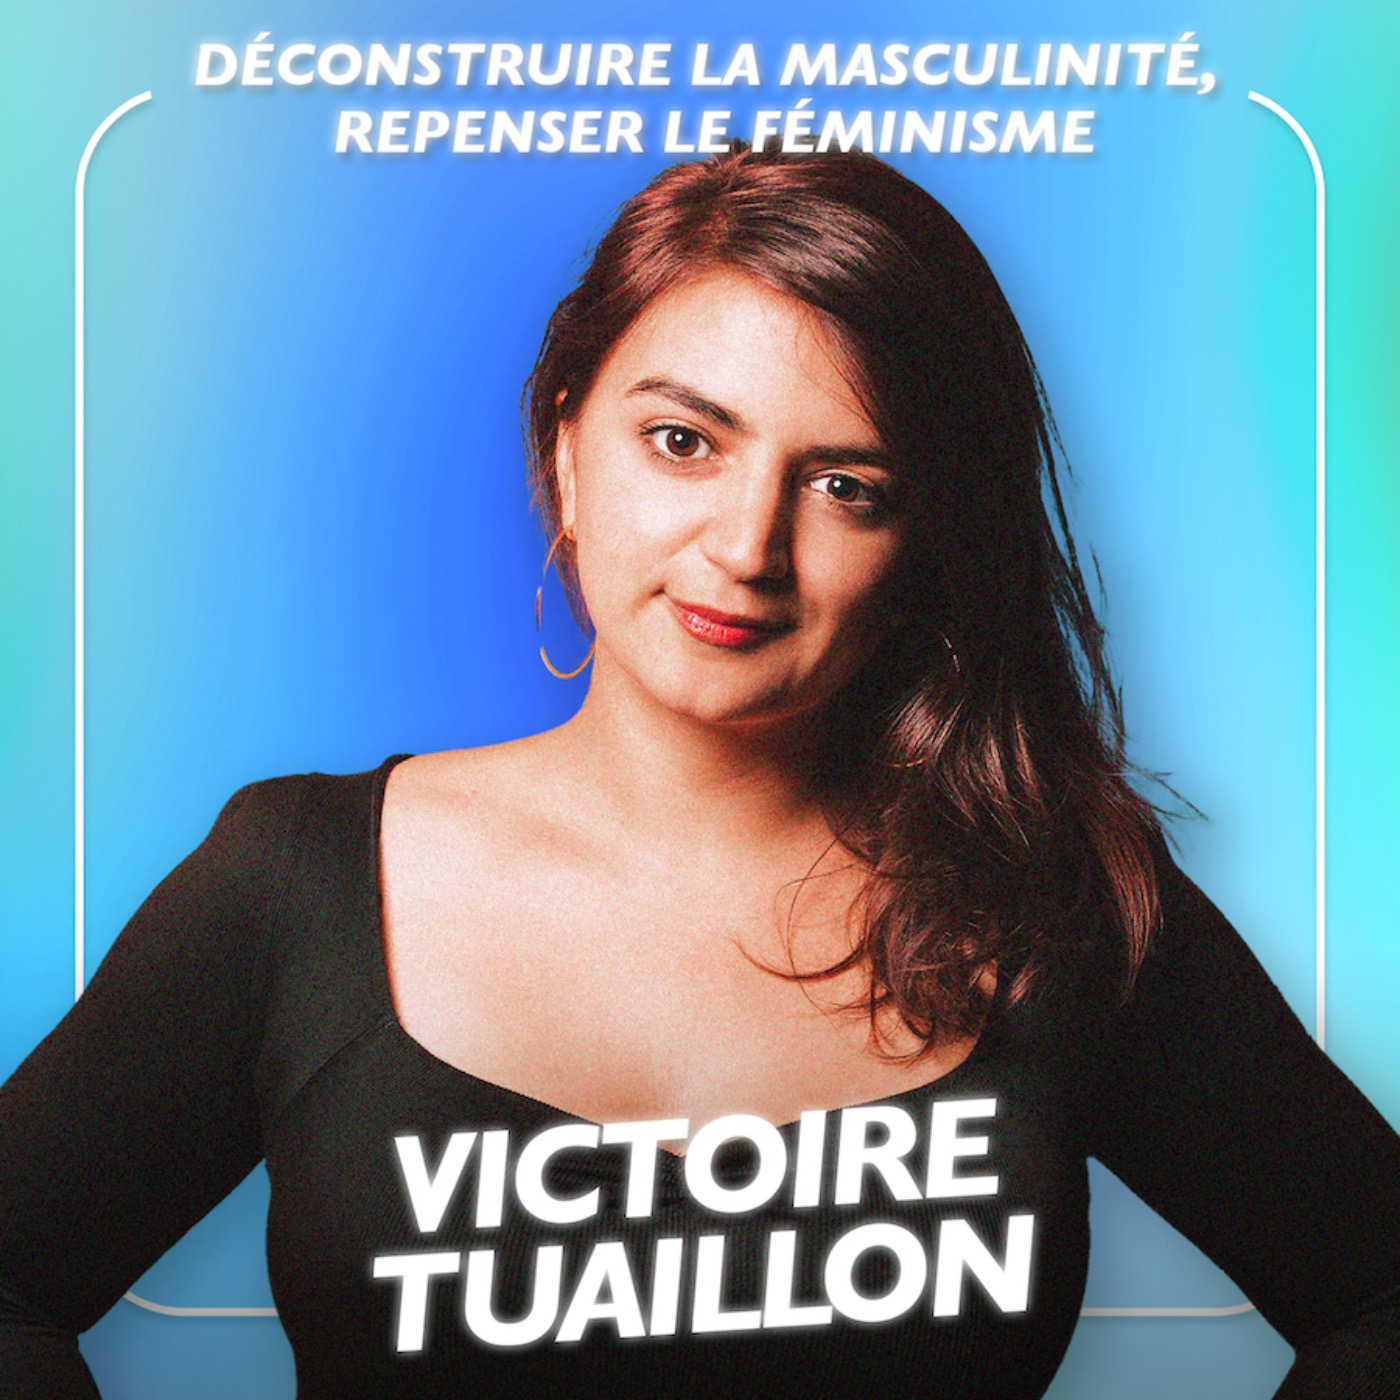 Victoire Tuaillon : Déconstruire la masculinité, repenser le féminisme